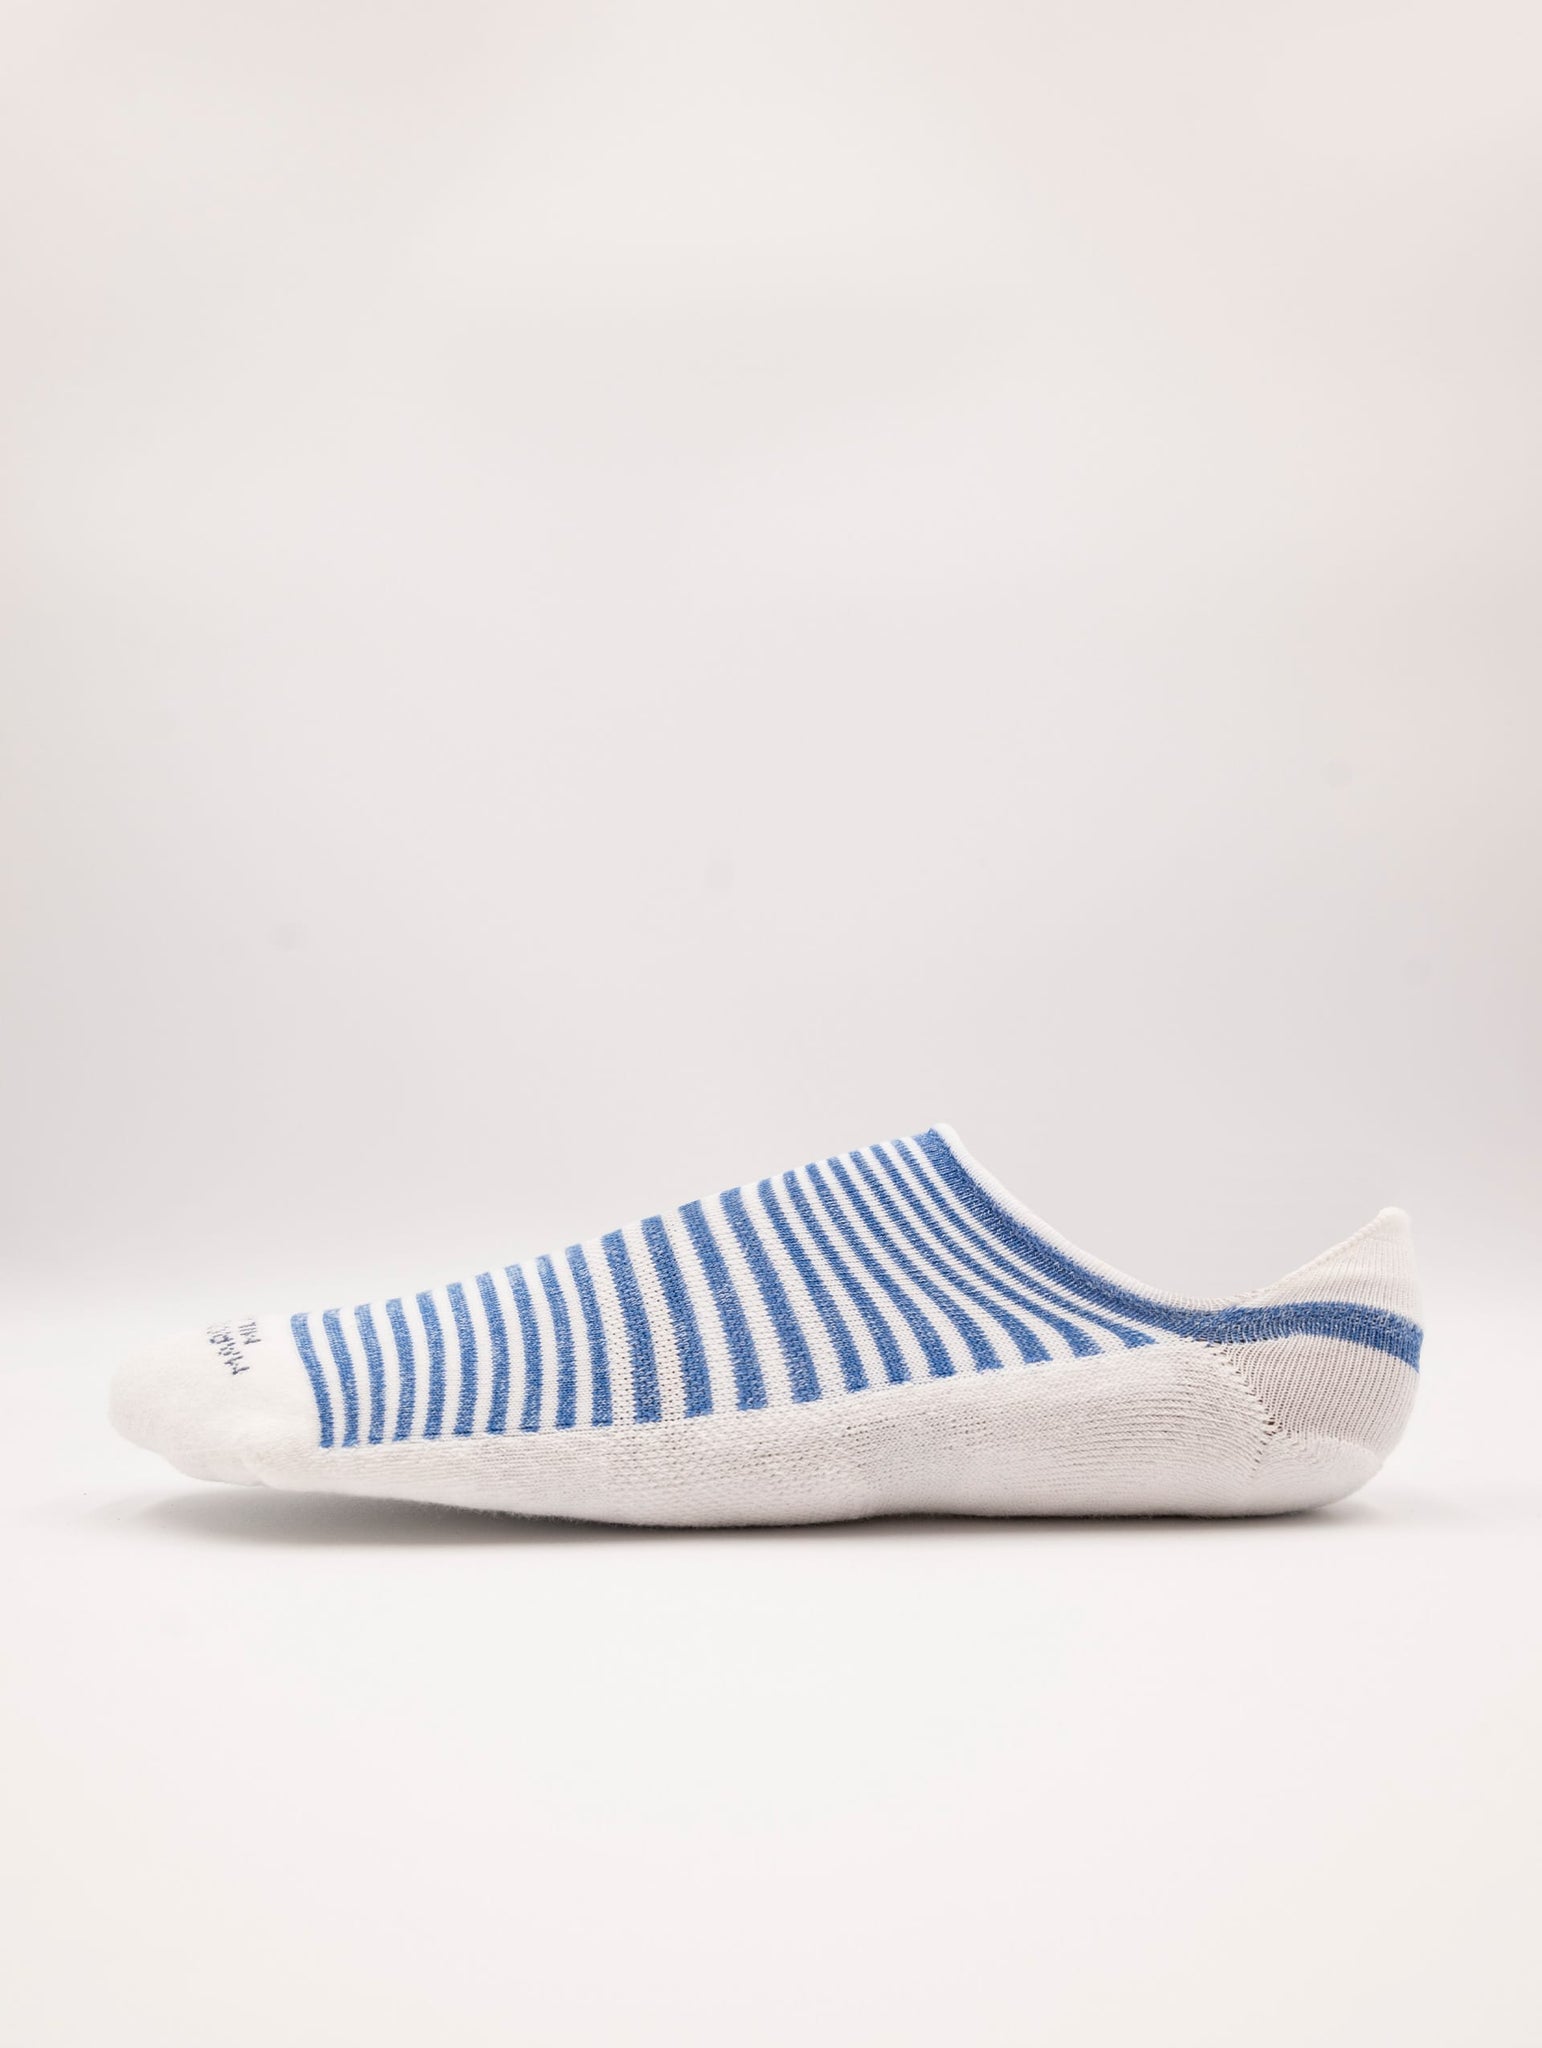 Fantasmini Marcoliani Invisible Sneaker in Cotone a Righe Bianco e Blu